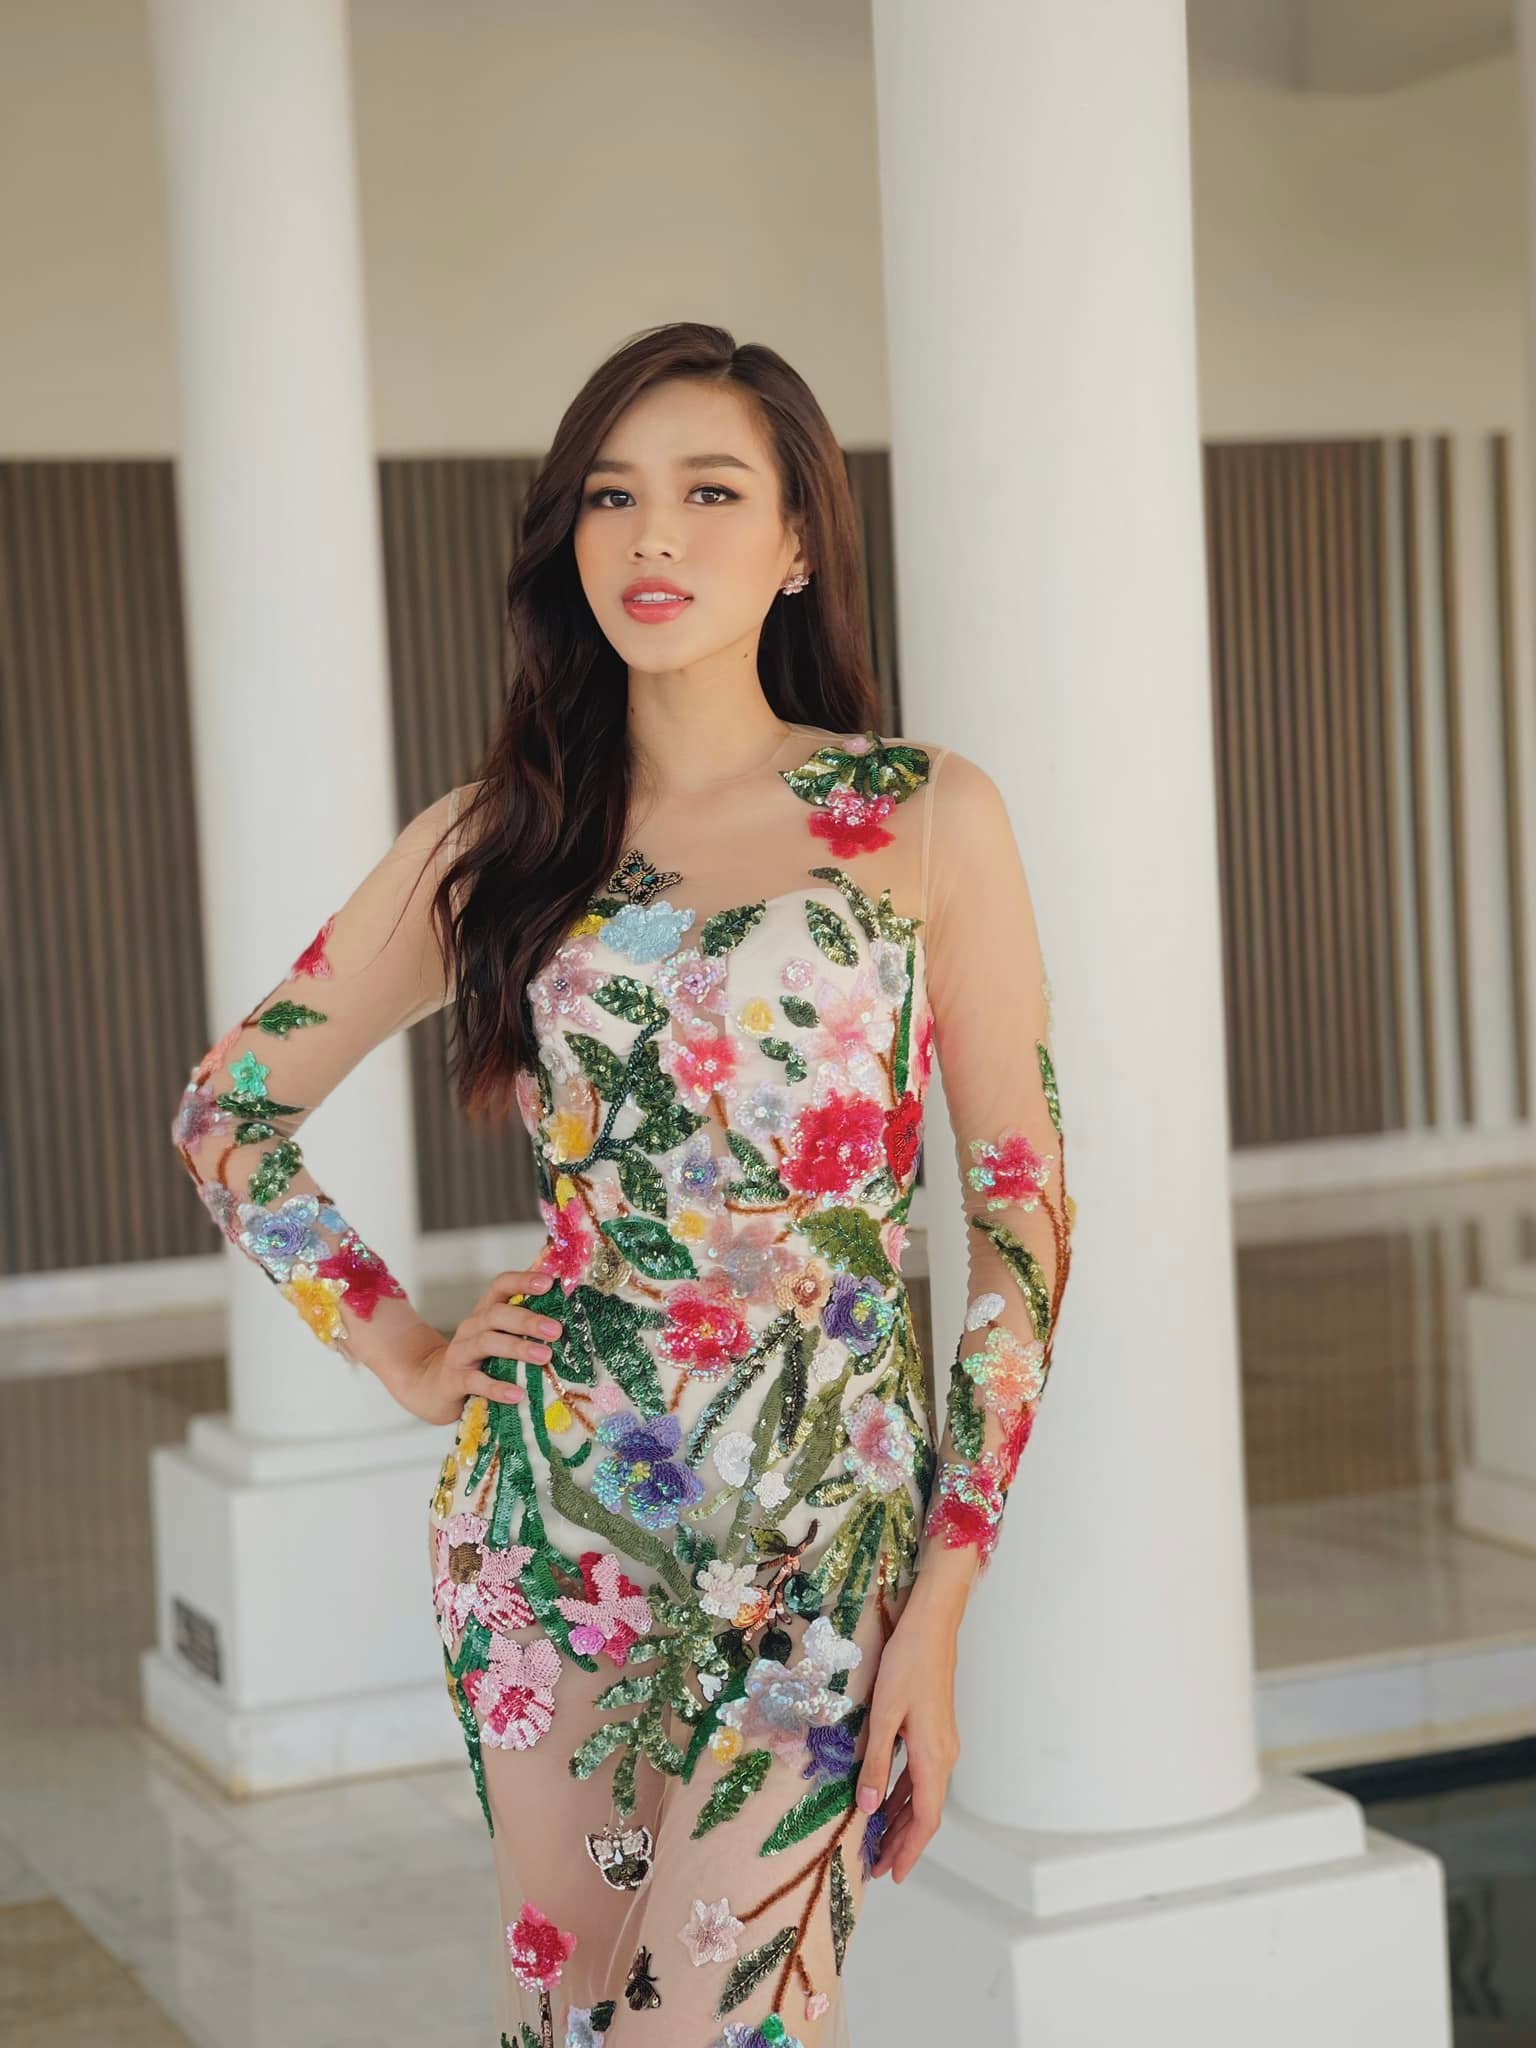 Tuy nhiên, ở những bức ảnh chụp gần, công chúng bỗng tụt một nhịp. Bởi, Hoa hậu Việt Nam 2020 chọn mặc một bộ đồ nội y màu trắng cho một thiết kế xuyên thấu. Đây là một lựa chọn hoàn toàn sai lầm.